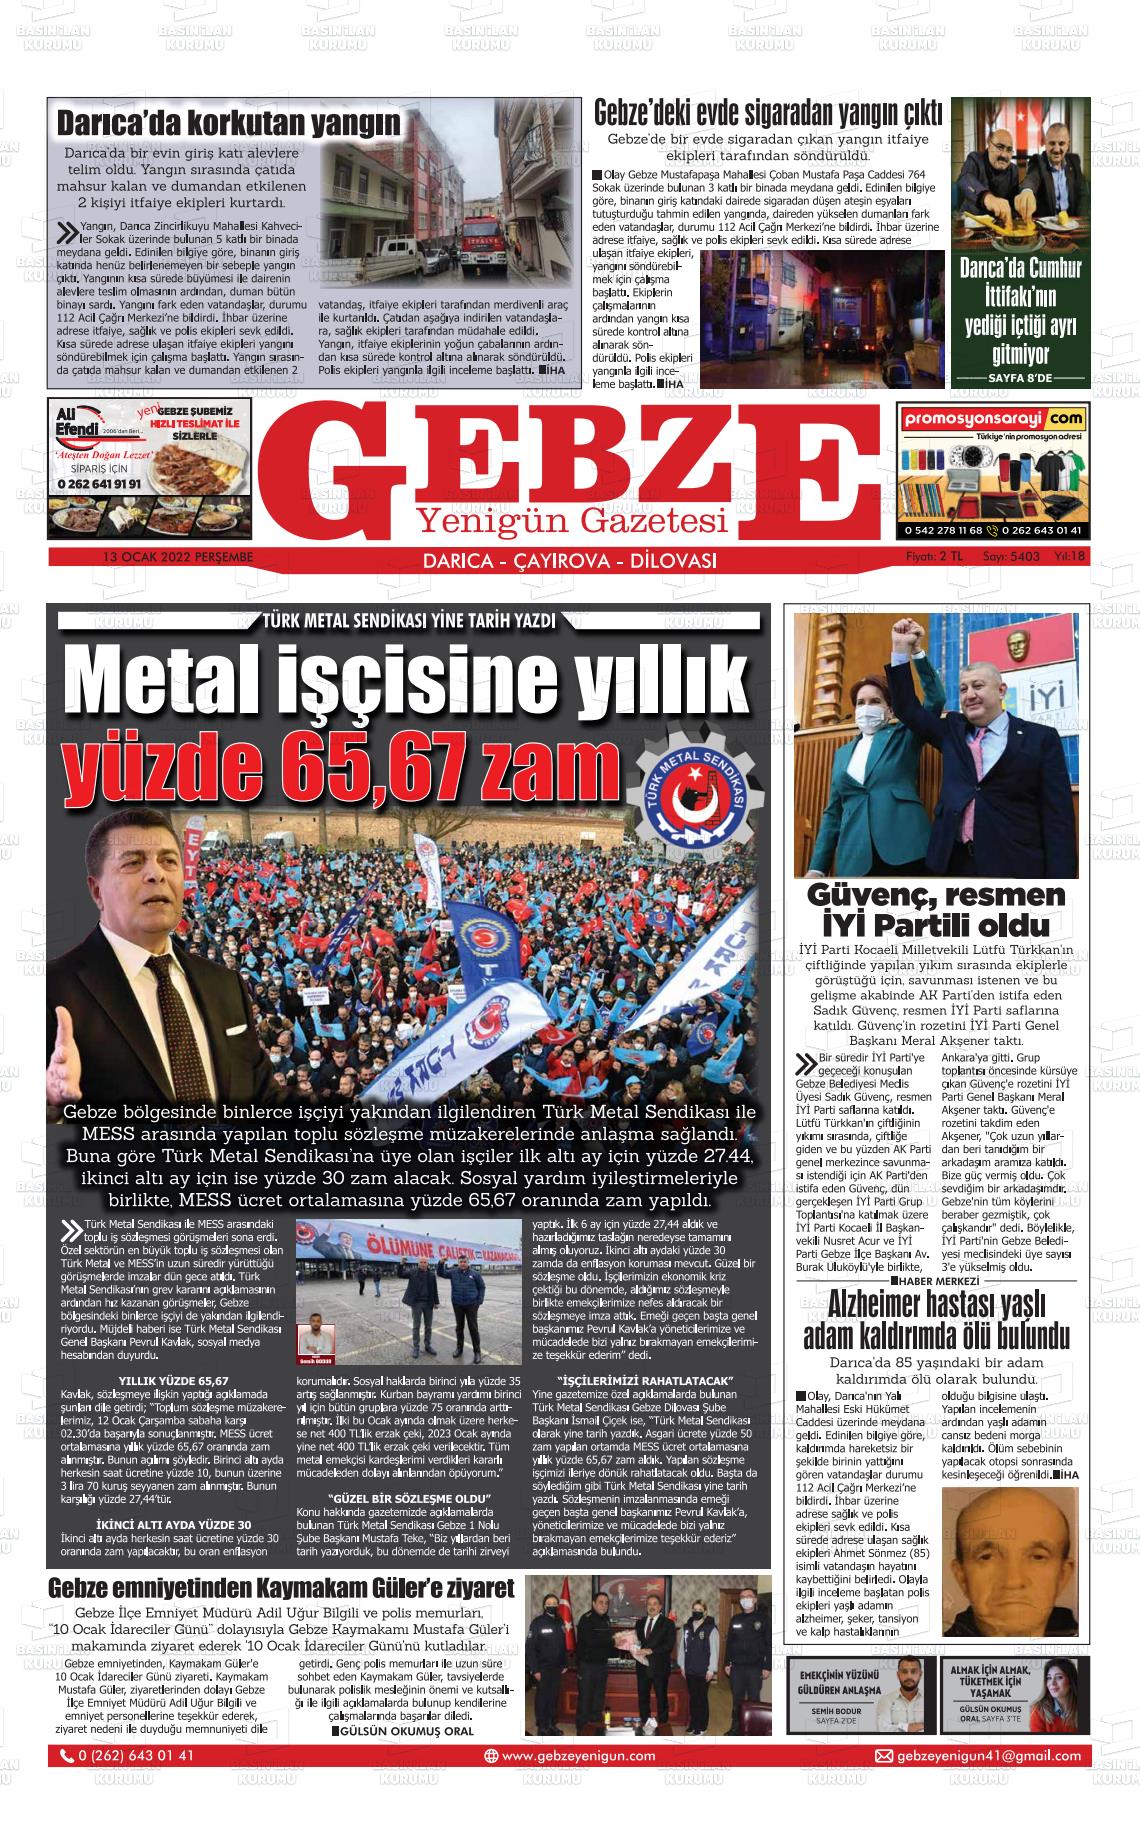 13 Ocak 2022 Gebze Yenigün Gazete Manşeti